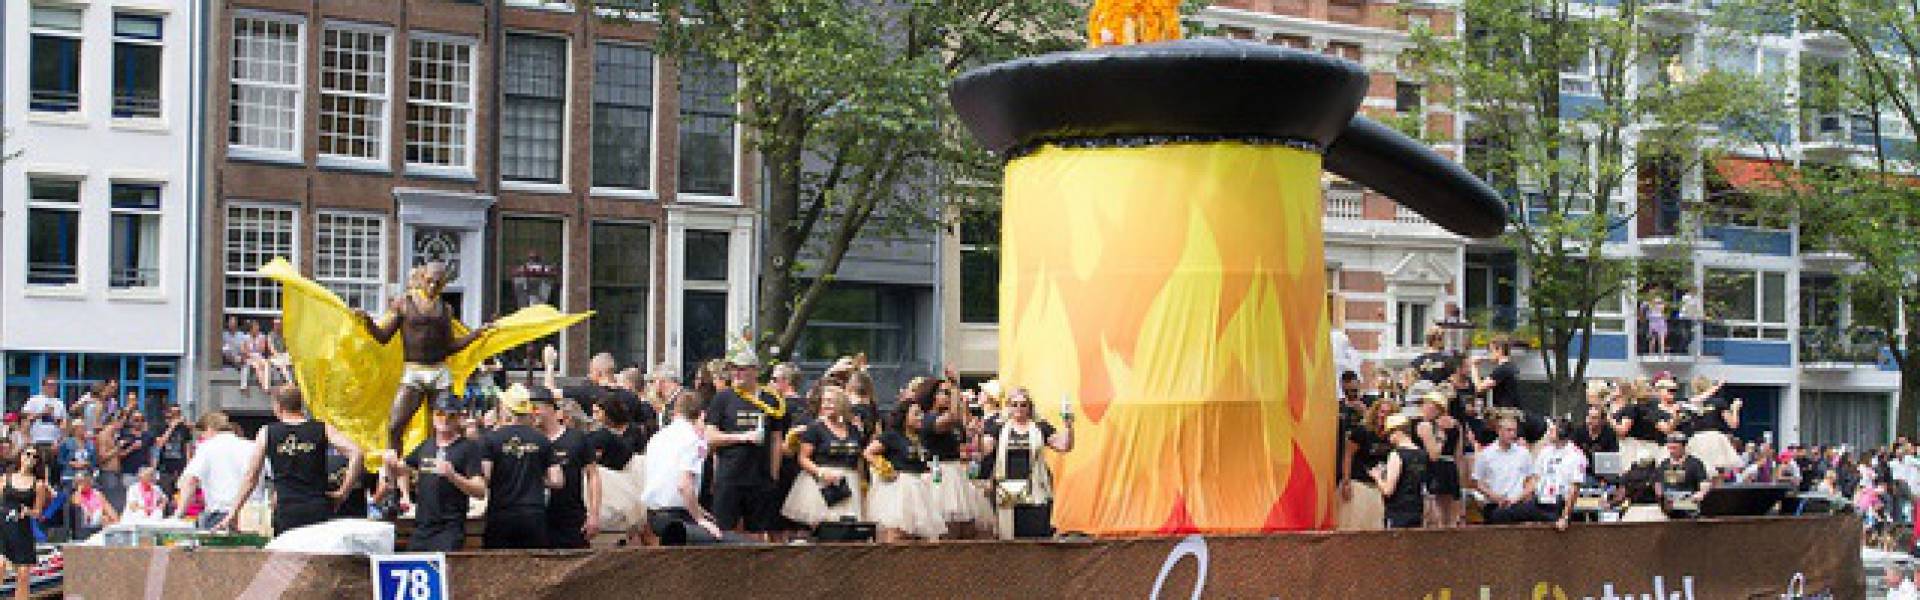 Groot opblaasbaar promotiemateriaal | X-Treme Creations Boot die vaart op het kanaal tijdens de Amsterdam Gay Pride met daarop een gigantische opblaasbare koekenpan van 4m diameter die op en neer beweegt met exotische dansers Loetje Steakhouse X-Treme Creations